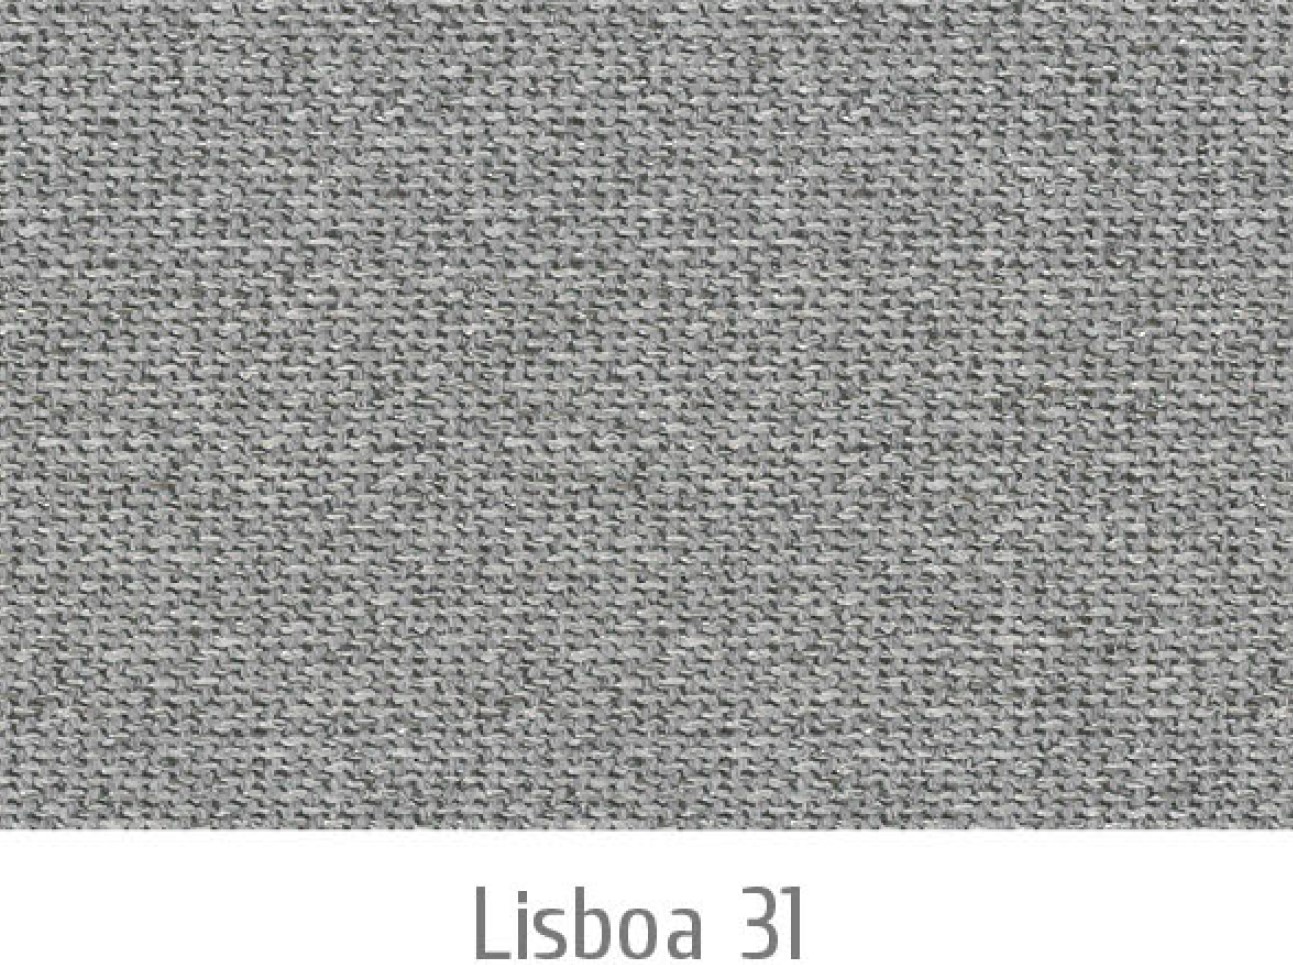 Lisboa31